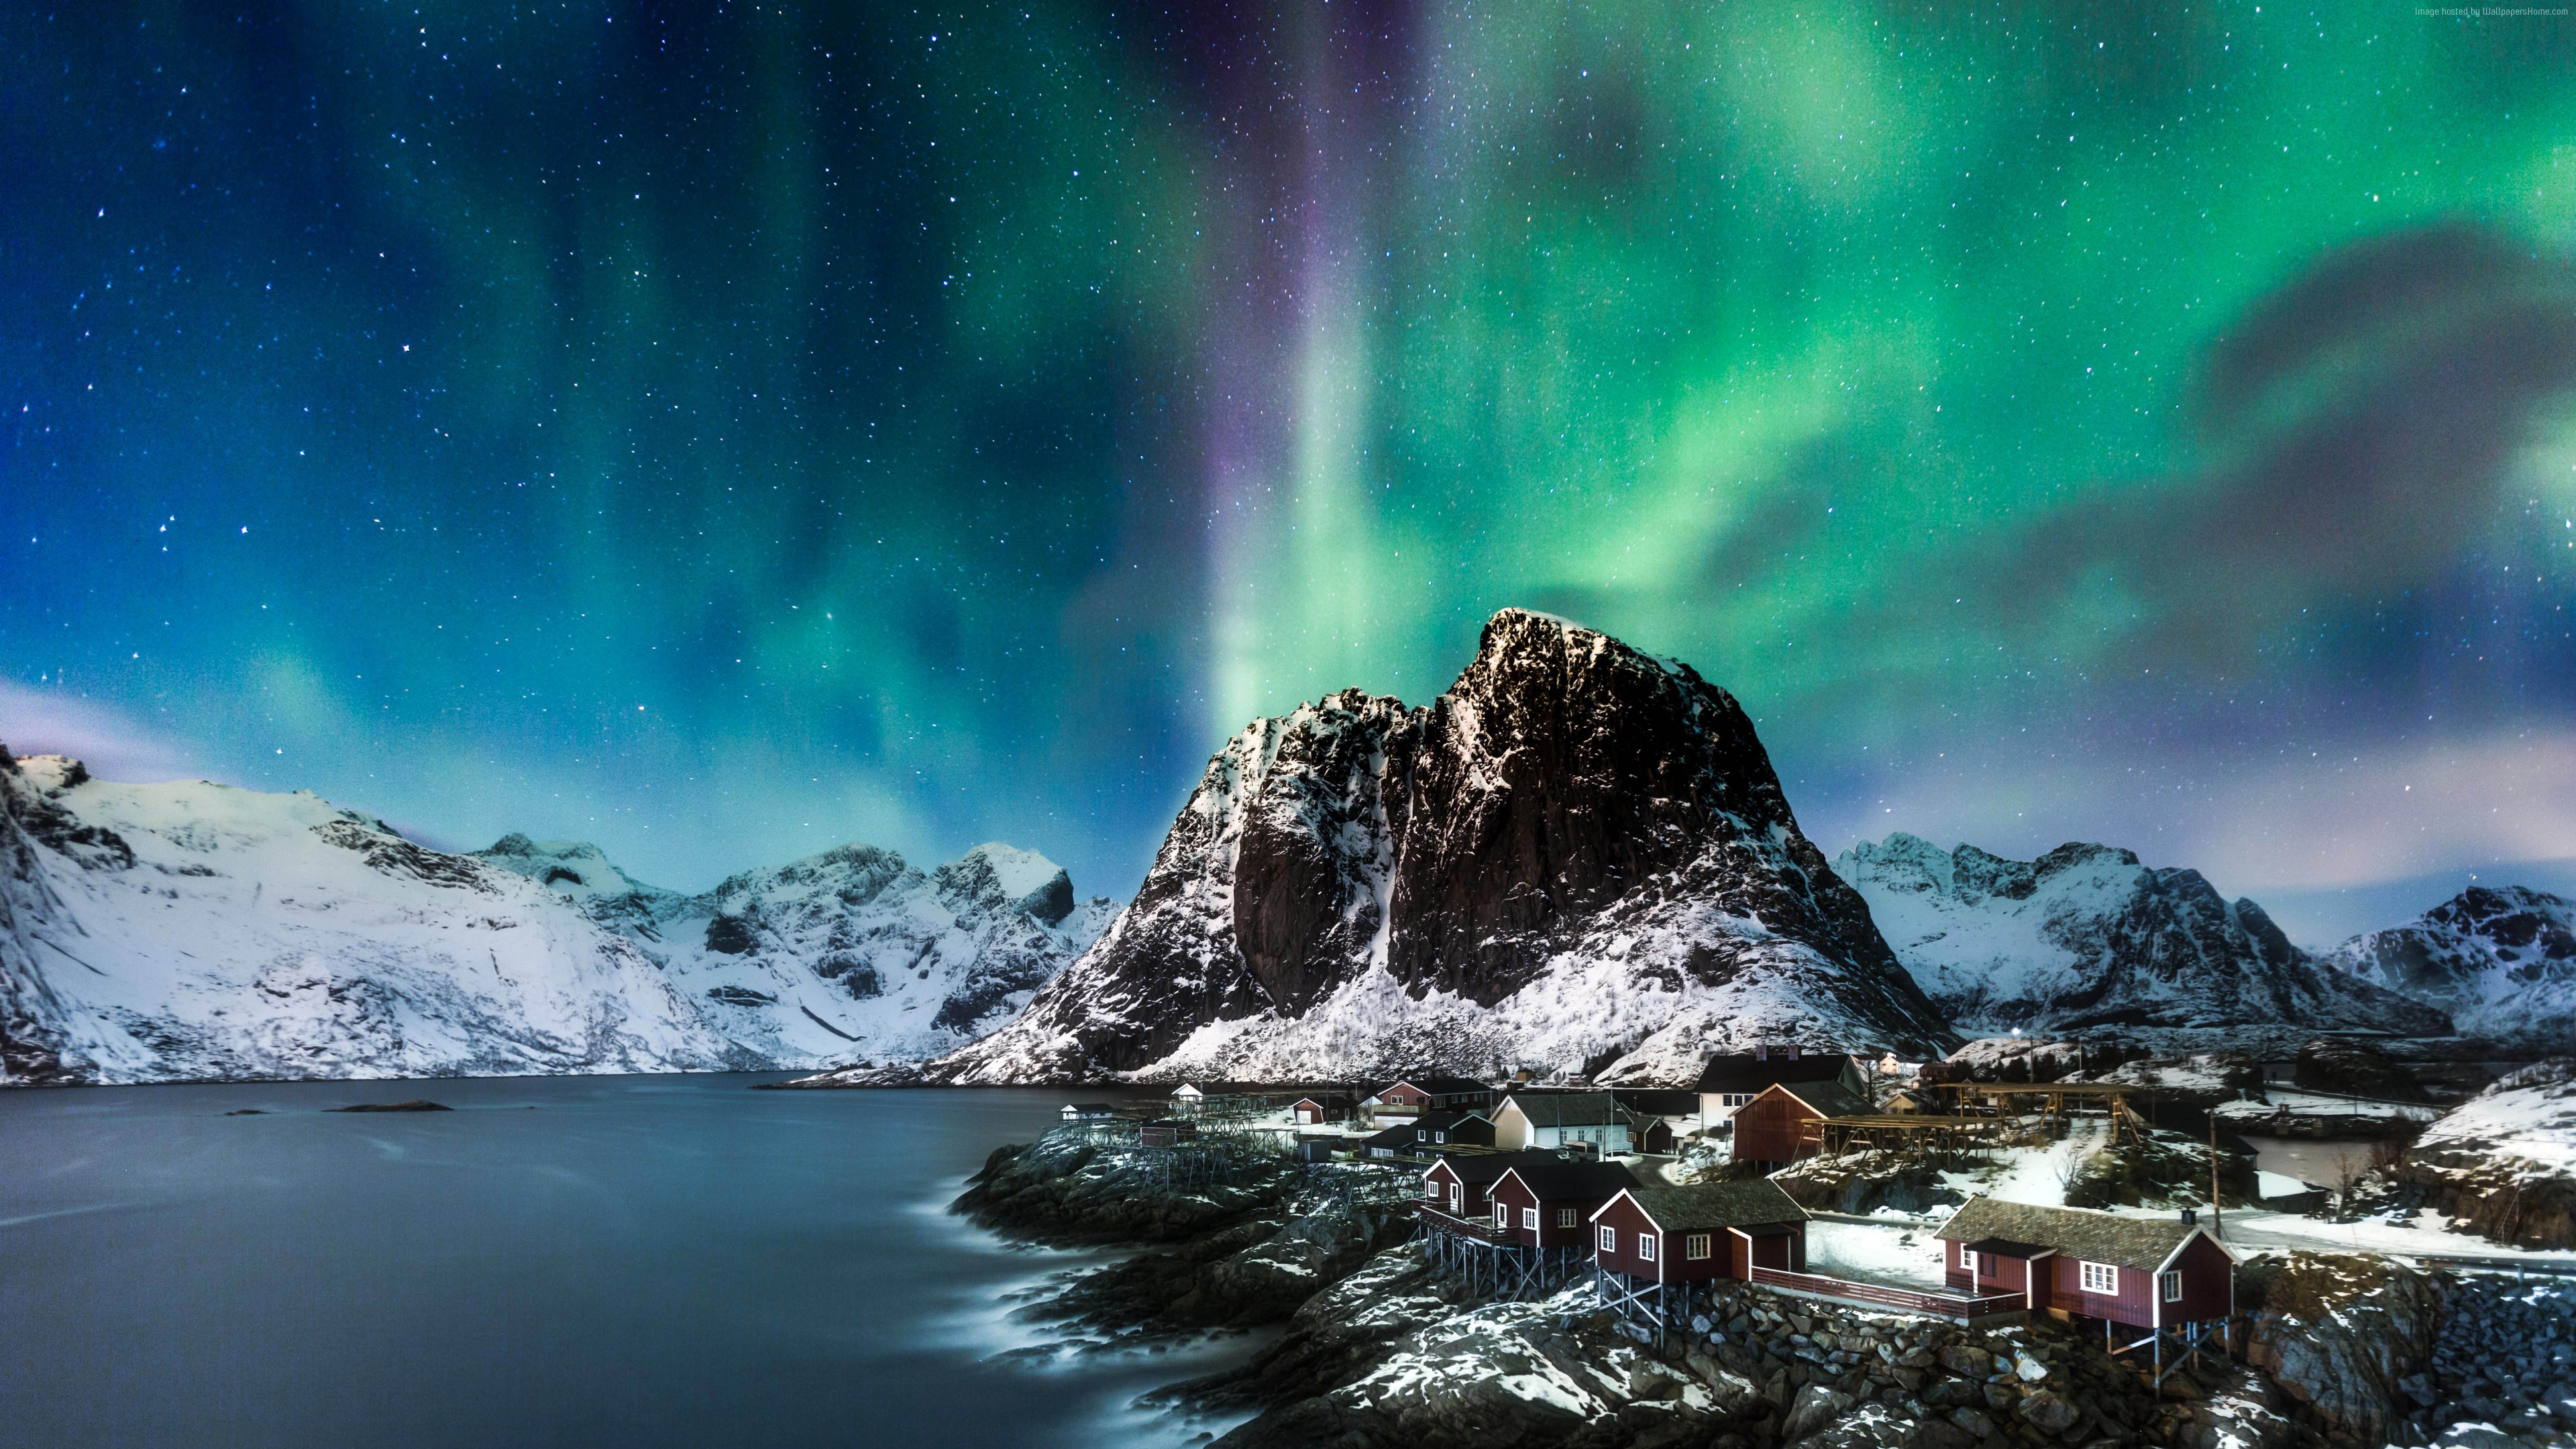 Wallpaper Norway, Lofoten islands, Europe, Mountains, sea, night, northern lights, 5k, Nature